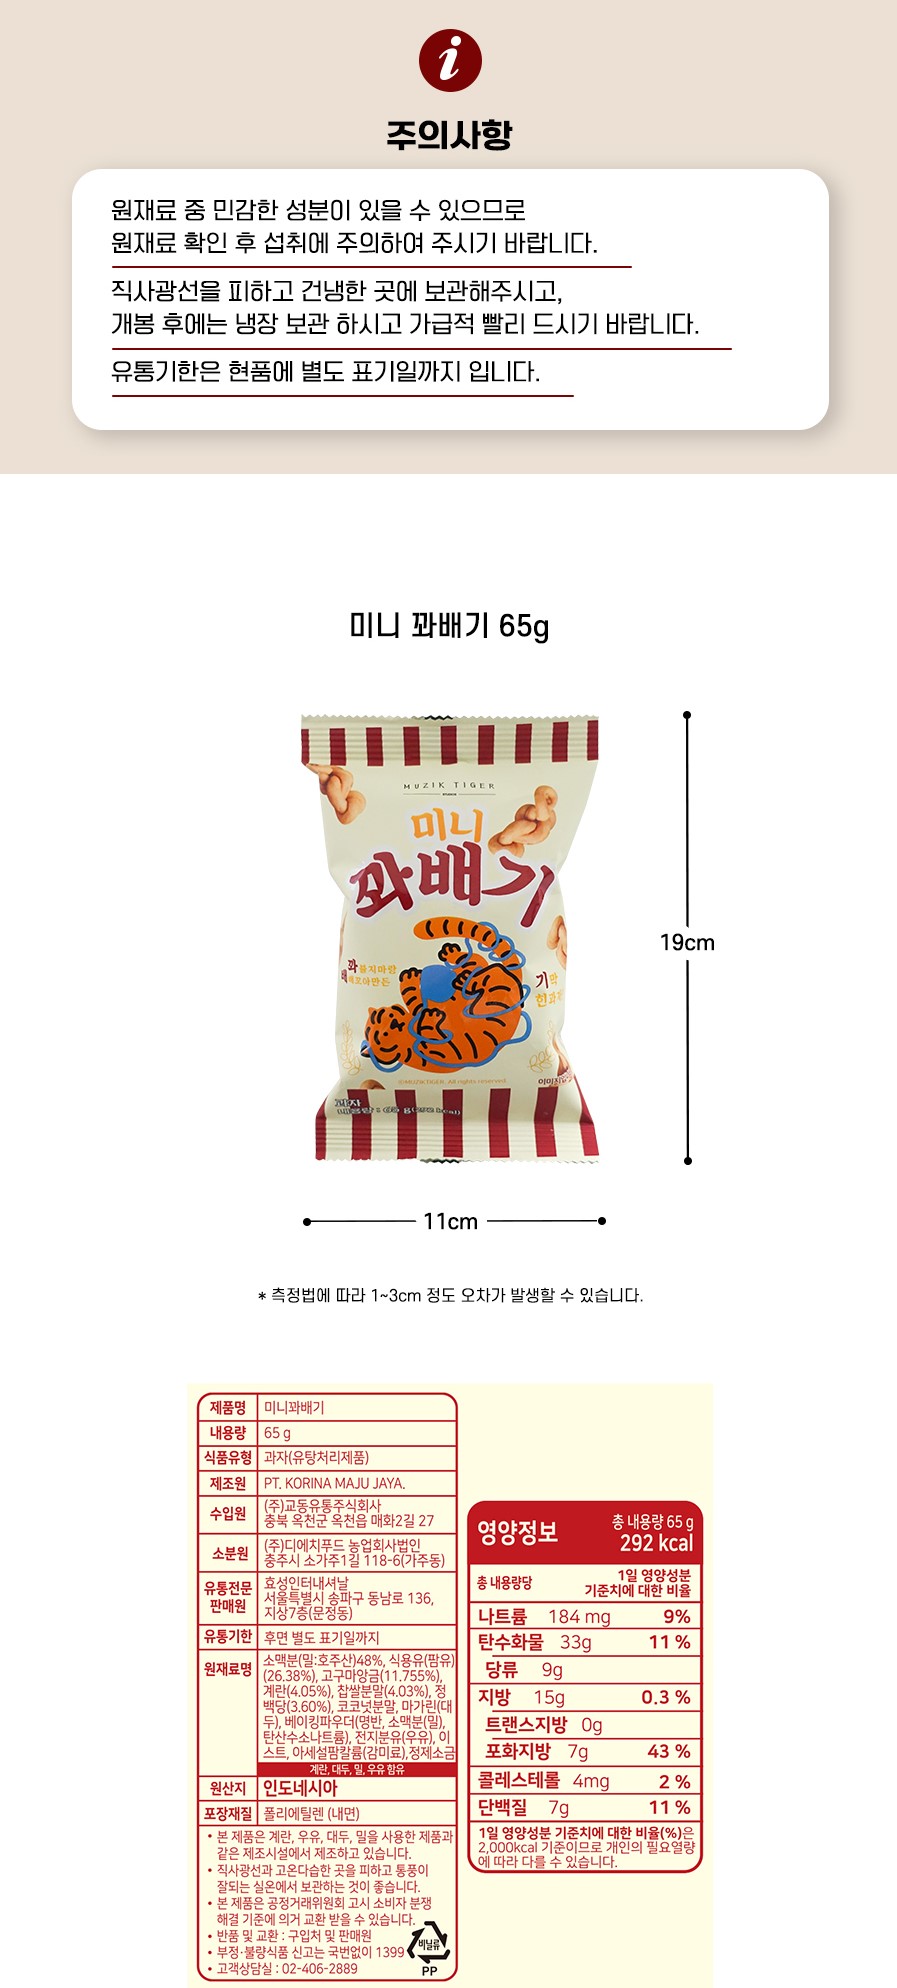 韓國食品-[무직타이거] 미니꽈배기 65g